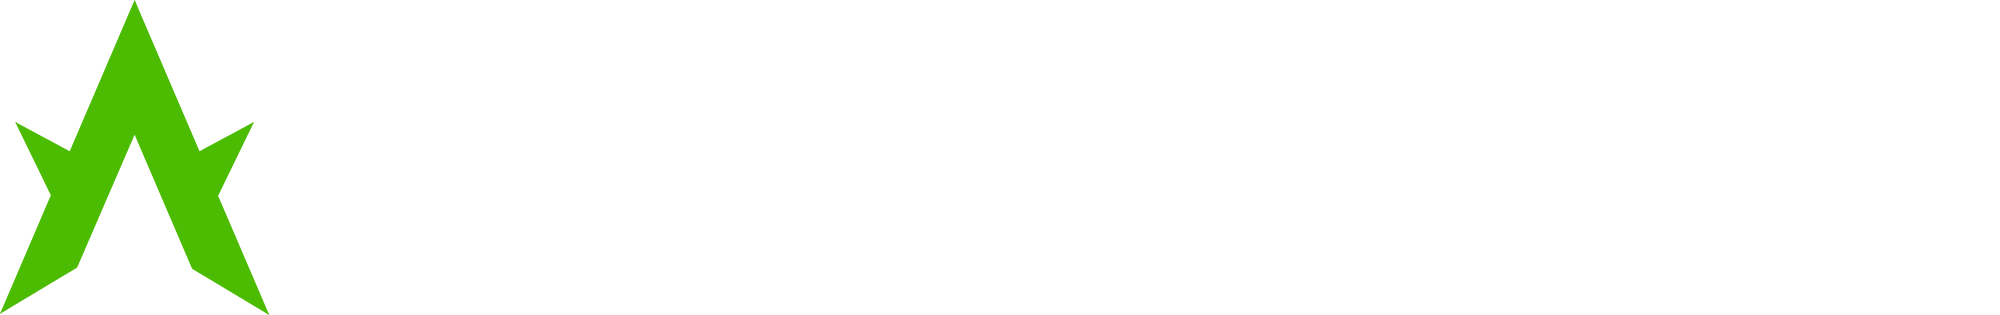 Abductor-logo